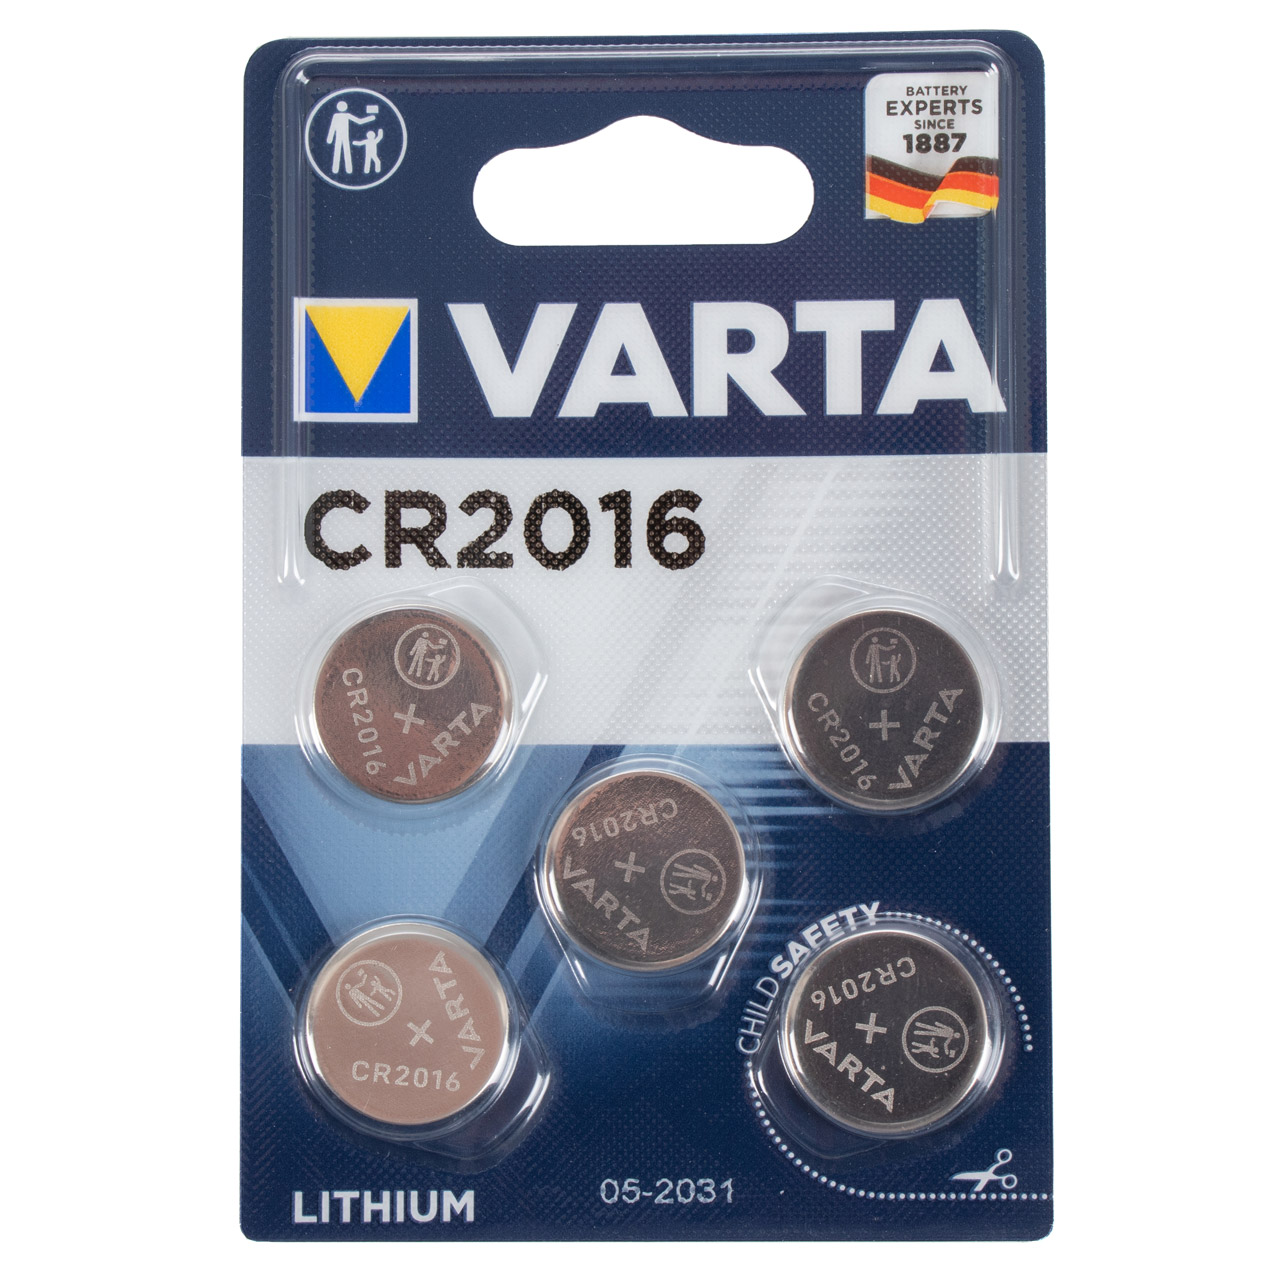 50x VARTA Lithium 3V CR2016 Knopfzelle Knopfbatterie Batterie (MHD 07.2031)